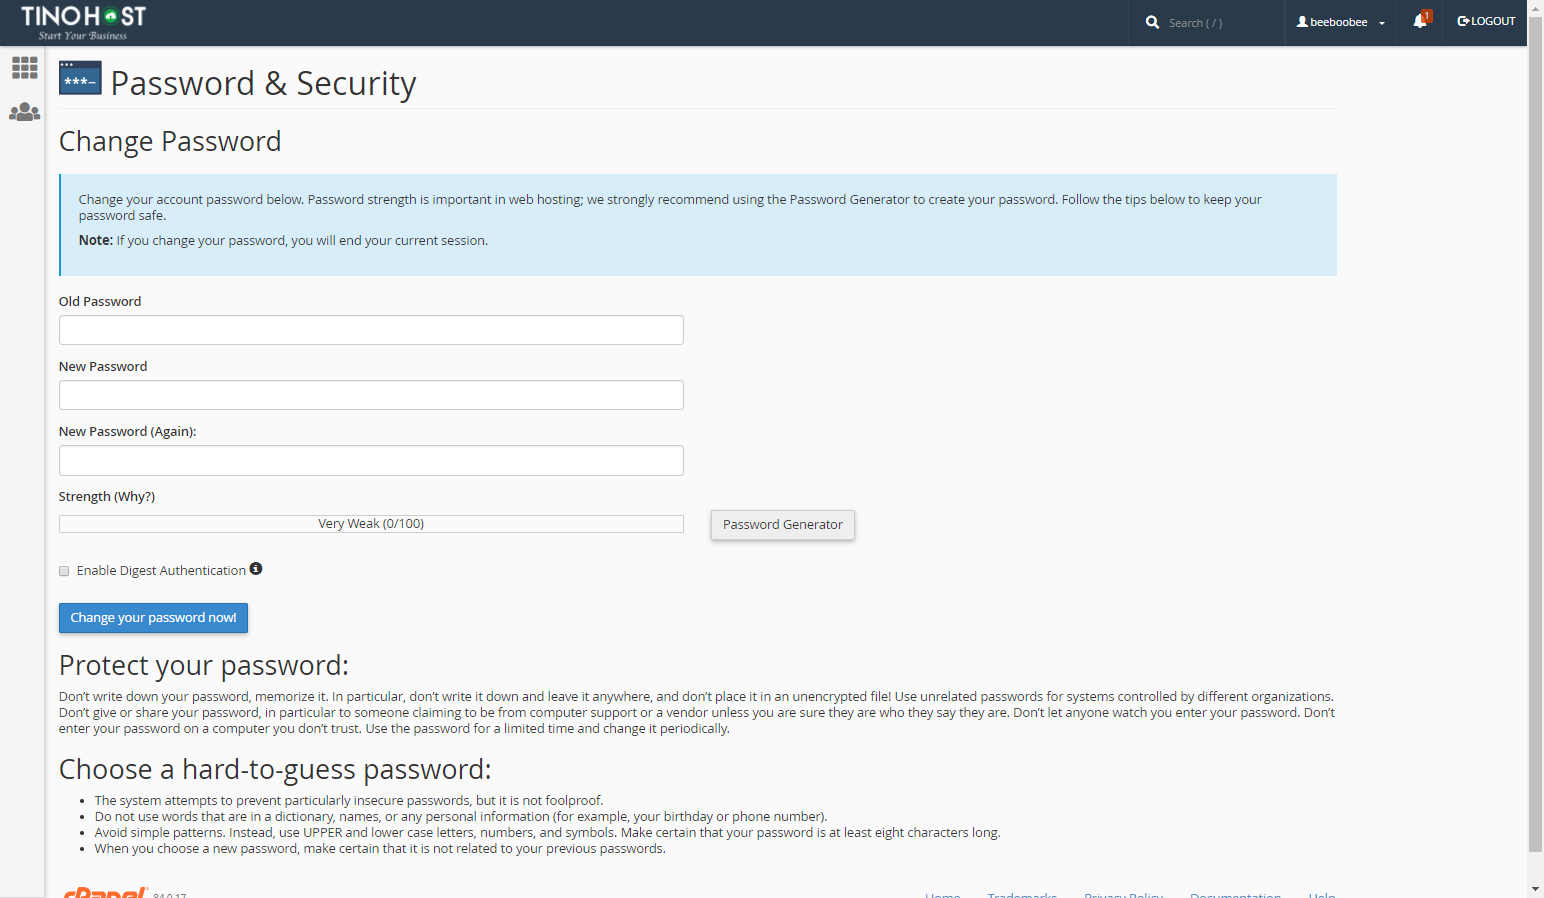 [cPanel] - Thay đổi mật khẩu bảo mật cPanel với Password & Security 4